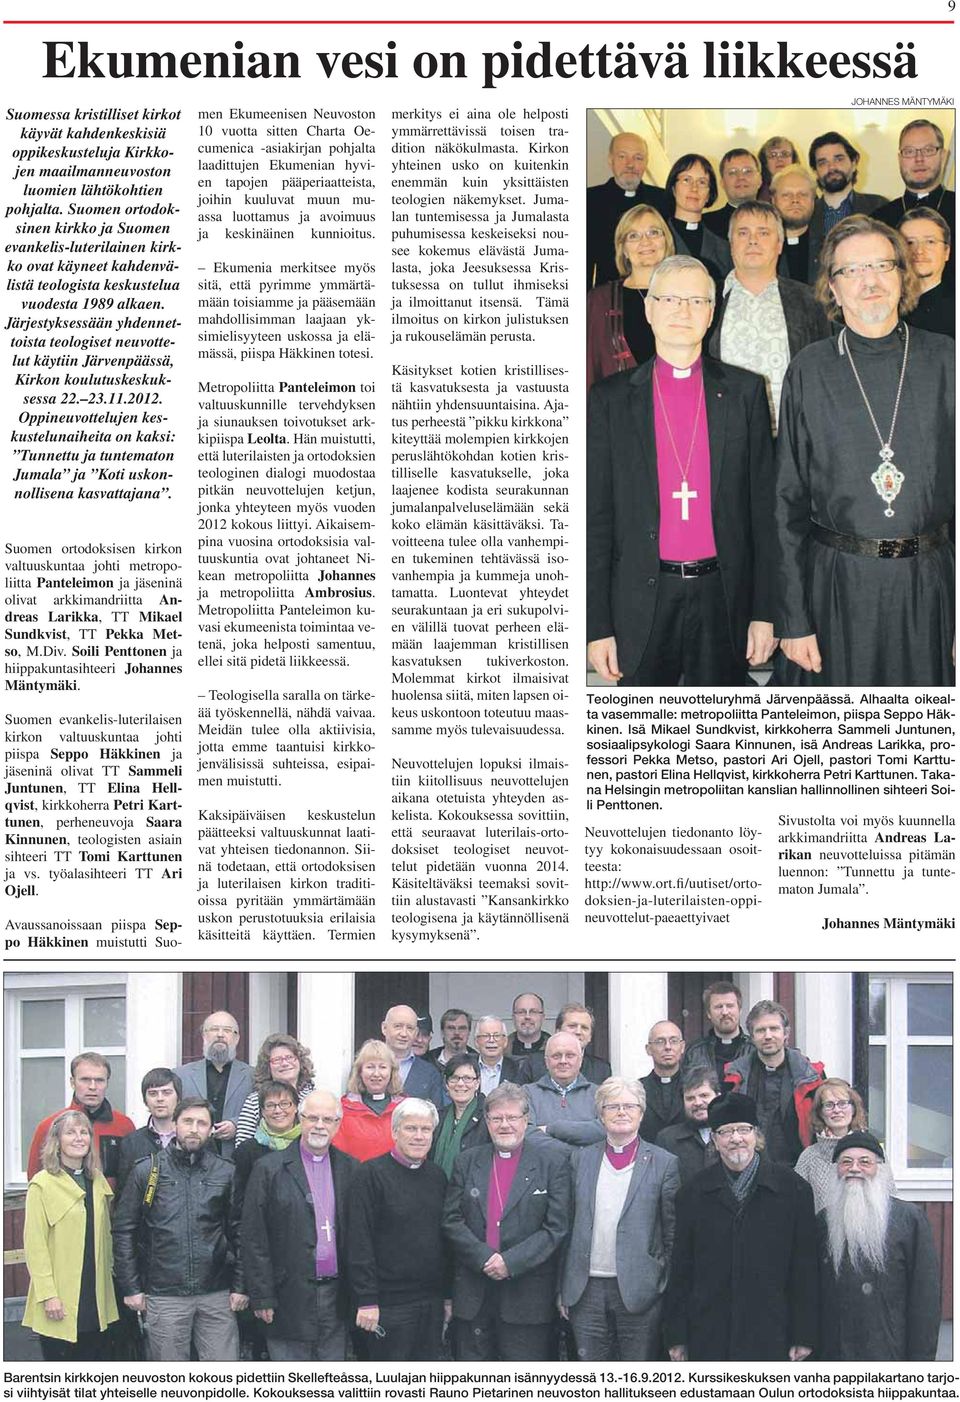 Järjestyksessään yhdennettoista teologiset neuvottelut käytiin Järvenpäässä, Kirkon koulutuskeskuksessa 22. 23.11.2012.